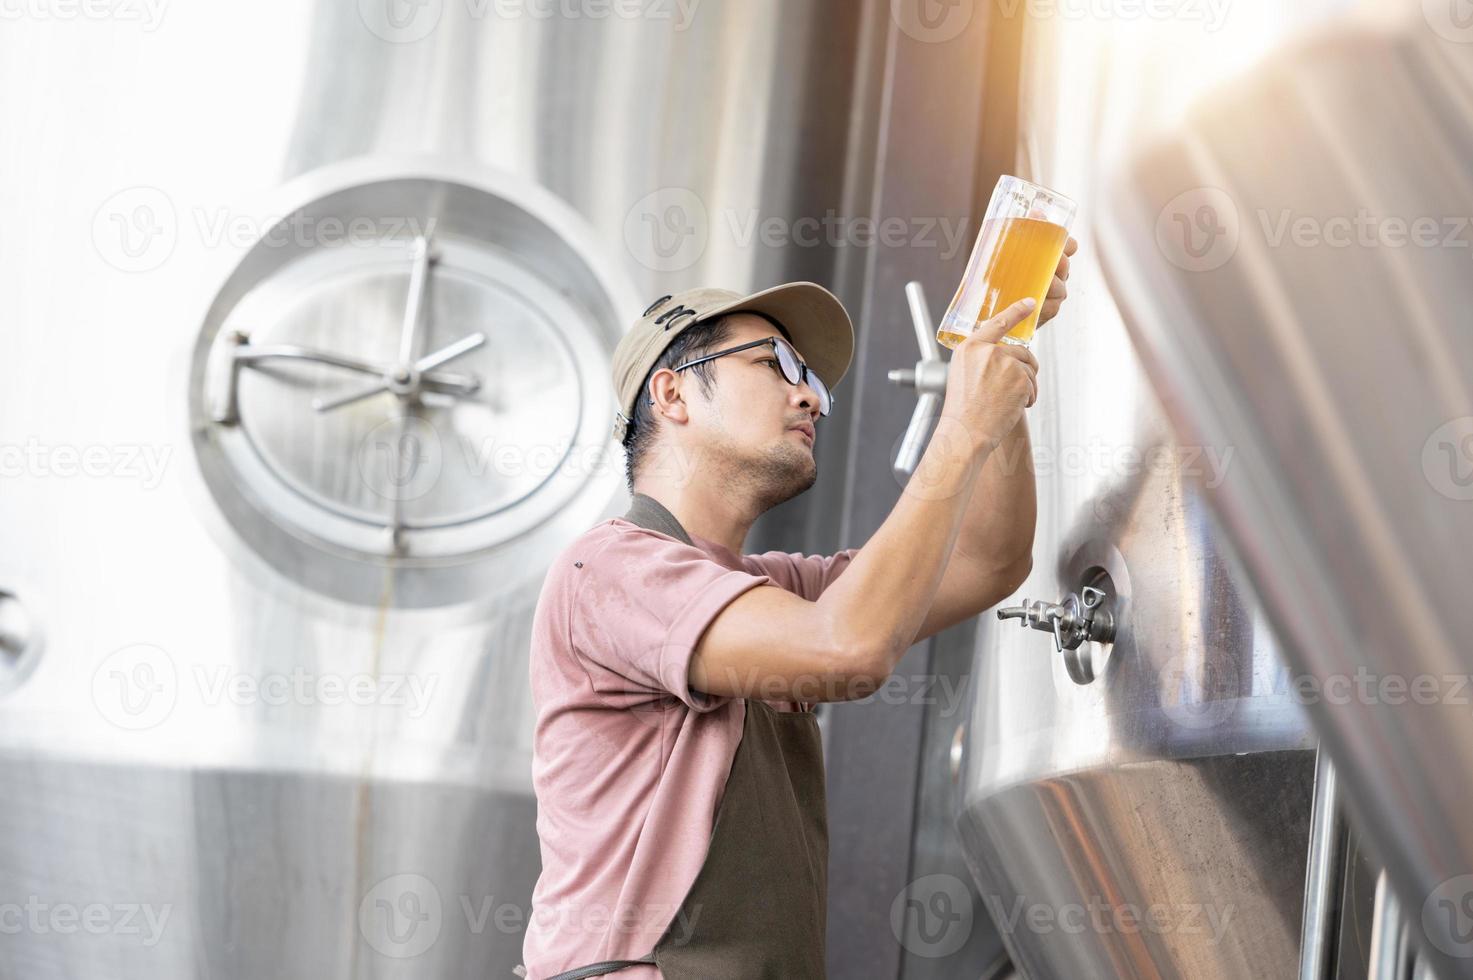 ung asiatisk arbetstagare inspekterande bryggeri kvalitet med en glas av hantverk öl utvärdera visuell utseende efter förberedelse medan arbetssätt i en bearbetning hantverk bryggeri. foto